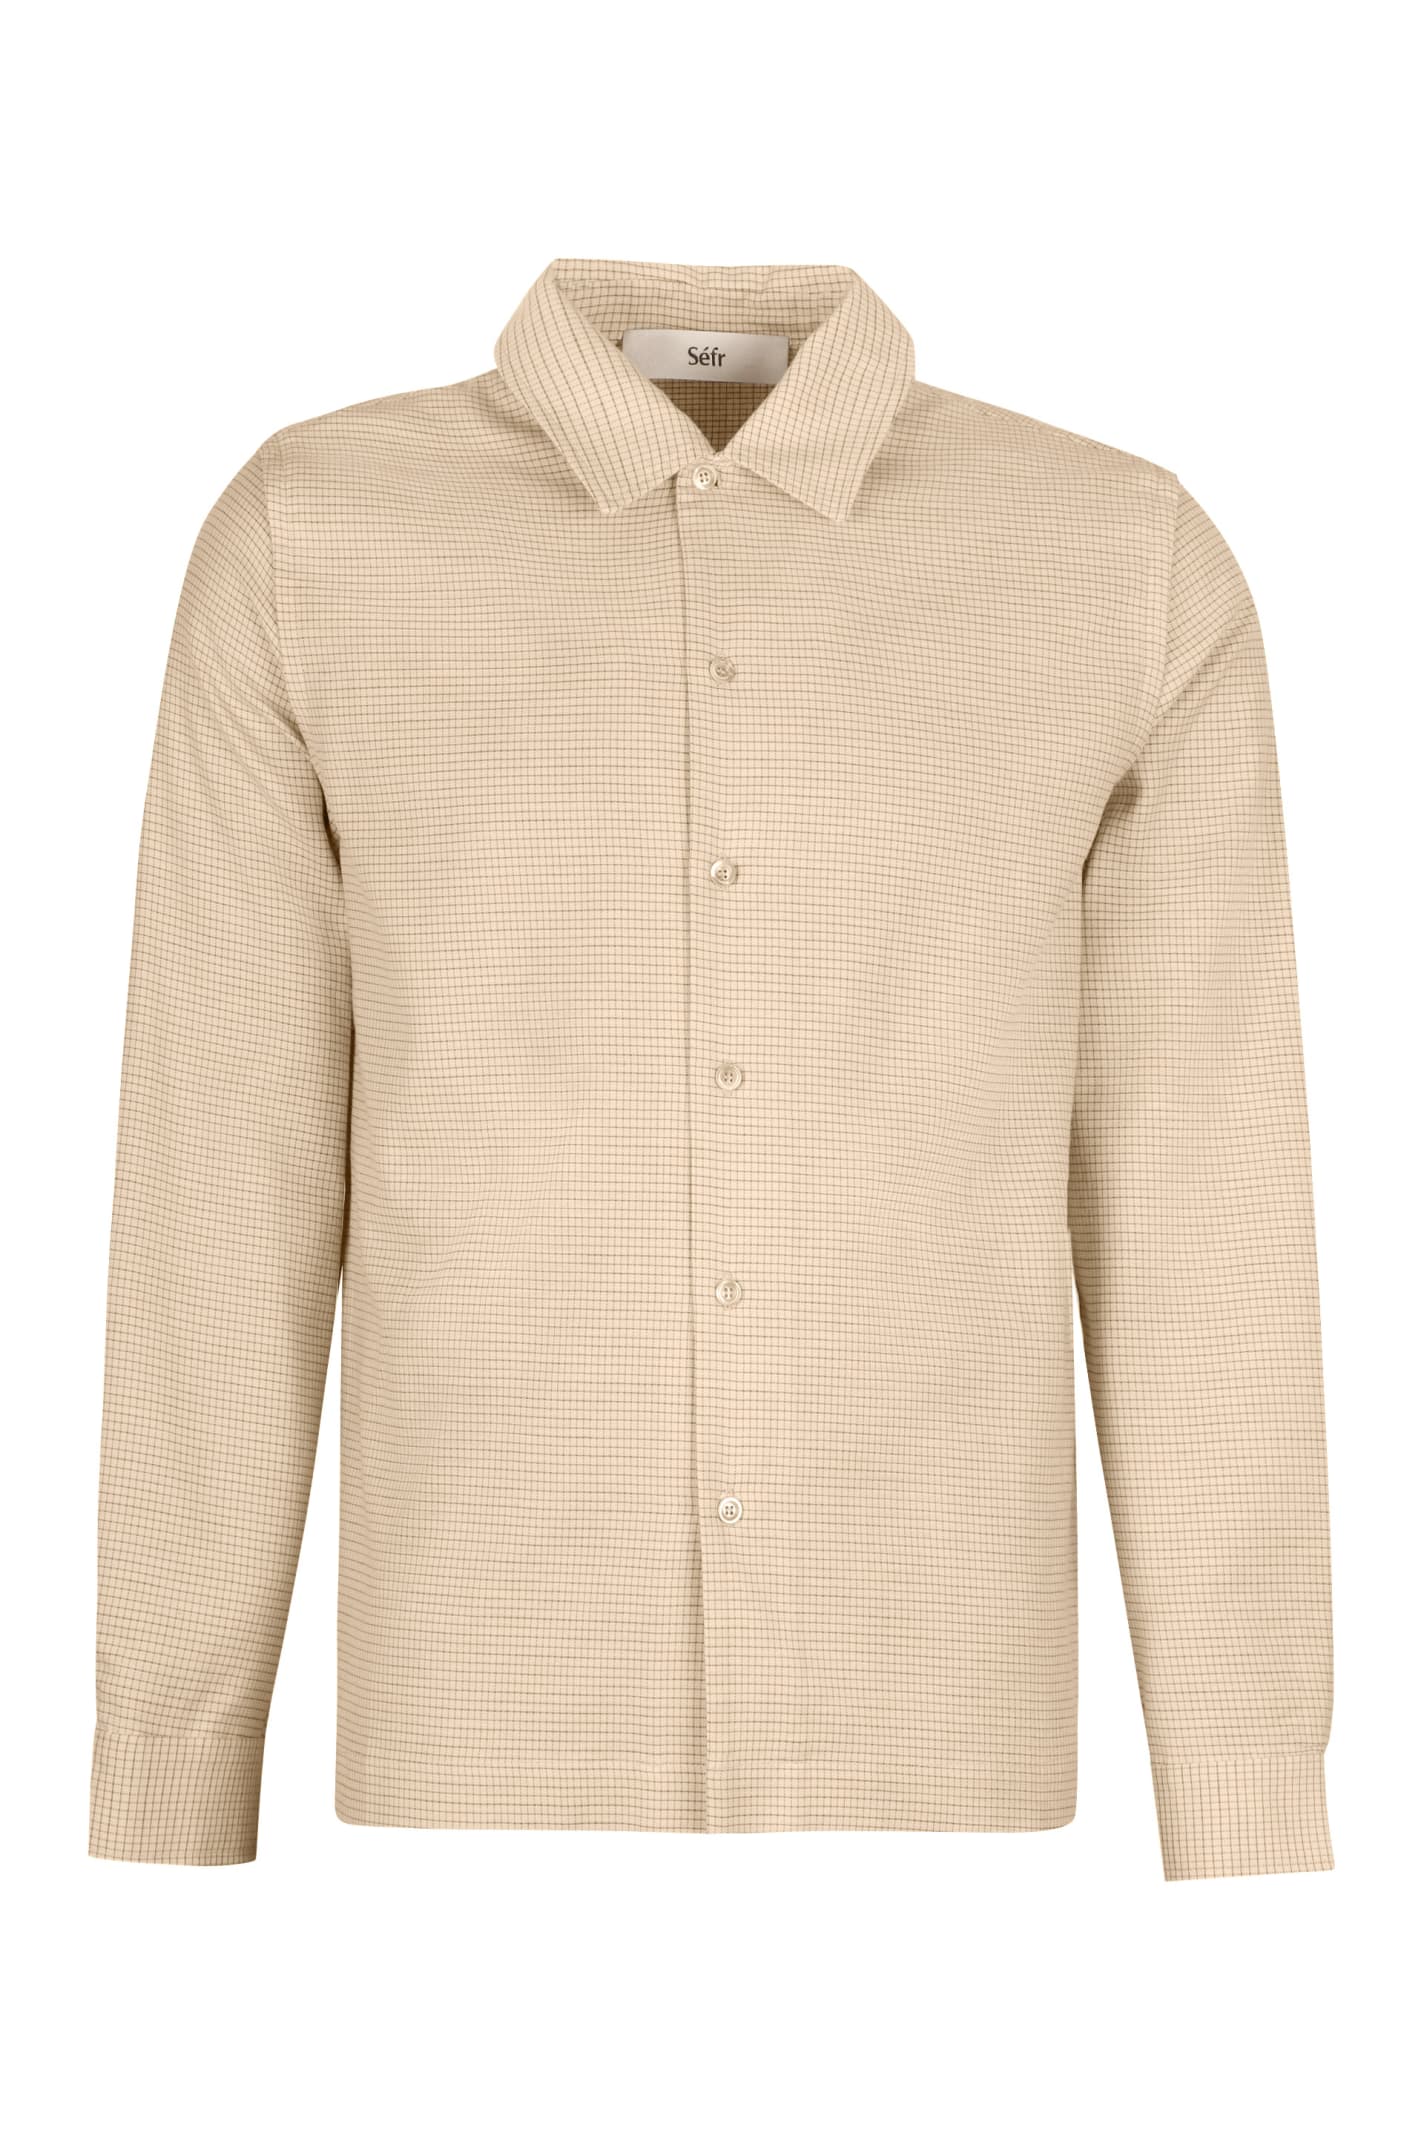 Séfr Rami Cotton Blend Buttoned Shirt